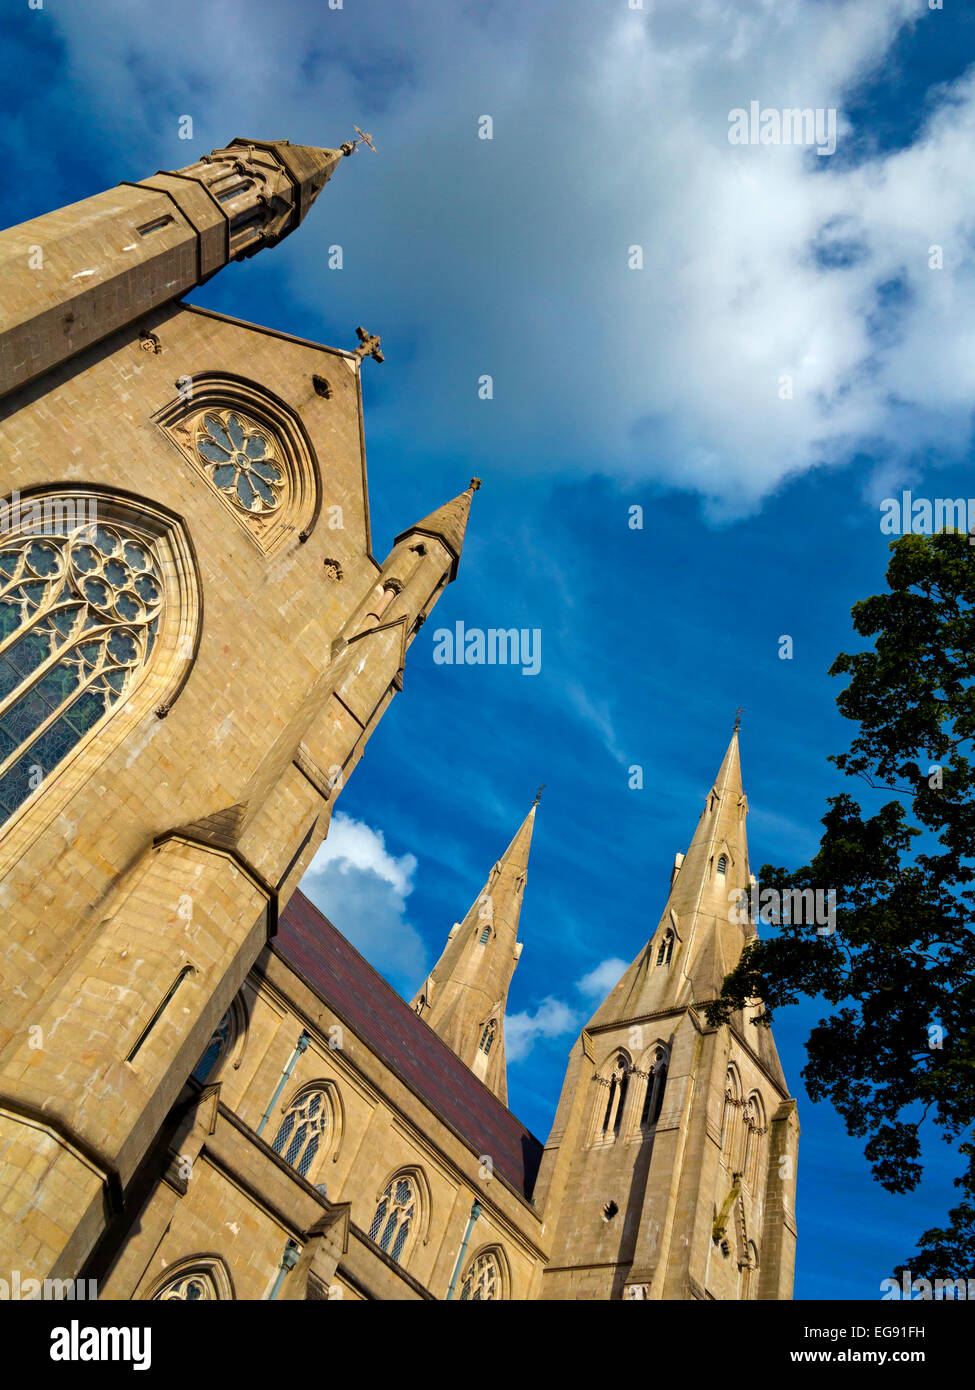 Les deux clochers de St Patrick's cathédrale catholique romaine à Armagh en Irlande du Nord 1840-1904 construit en style néo-gothique Banque D'Images